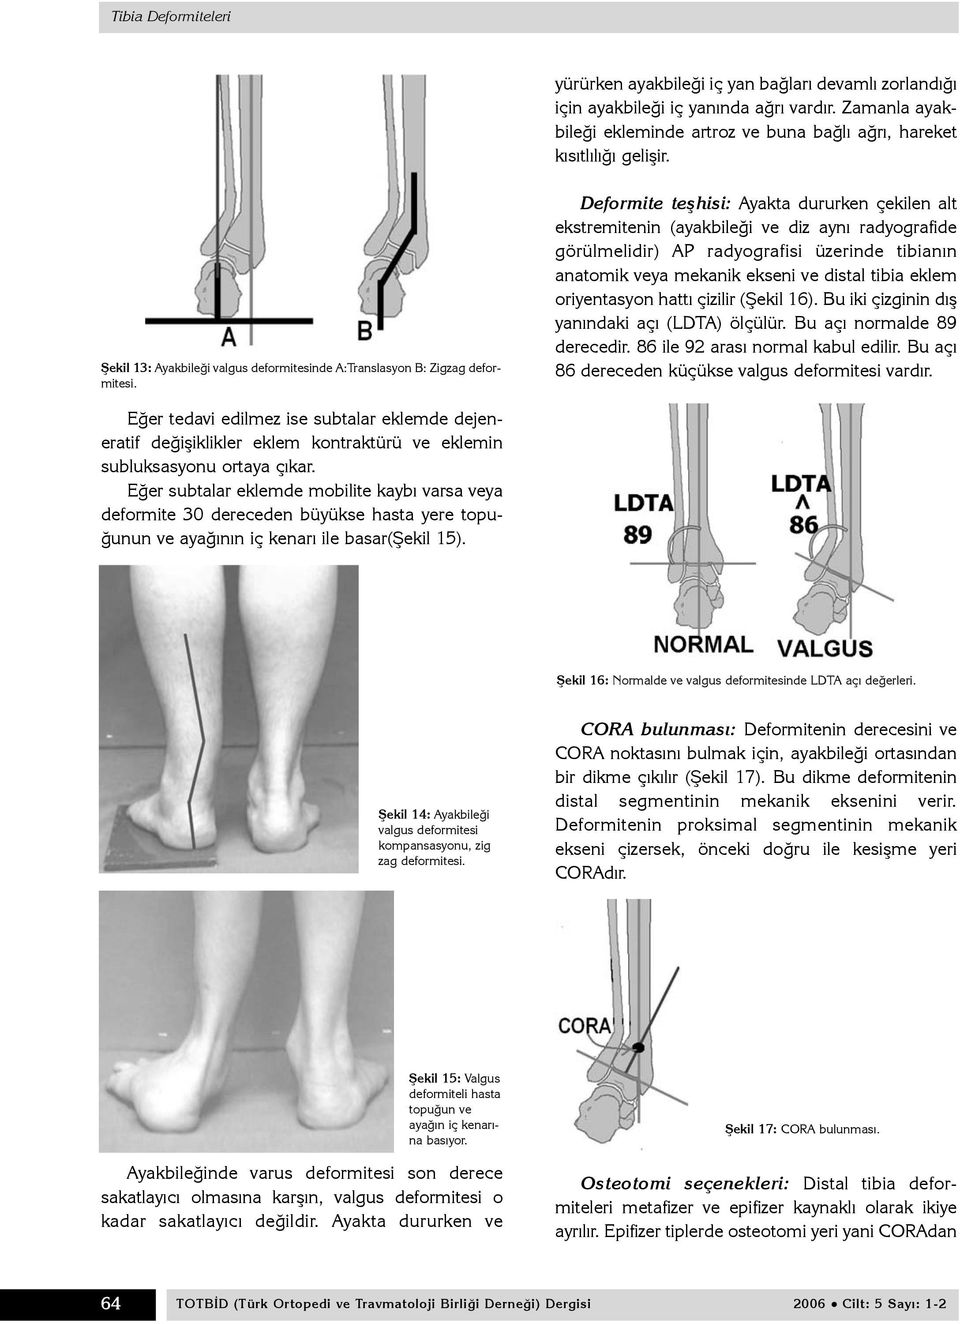 Deformite teþhisi: Ayakta dururken çekilen alt ekstremitenin (ayakbileði ve diz ayný radyografide görülmelidir) AP radyografisi üzerinde tibianýn anatomik veya mekanik ekseni ve distal tibia eklem